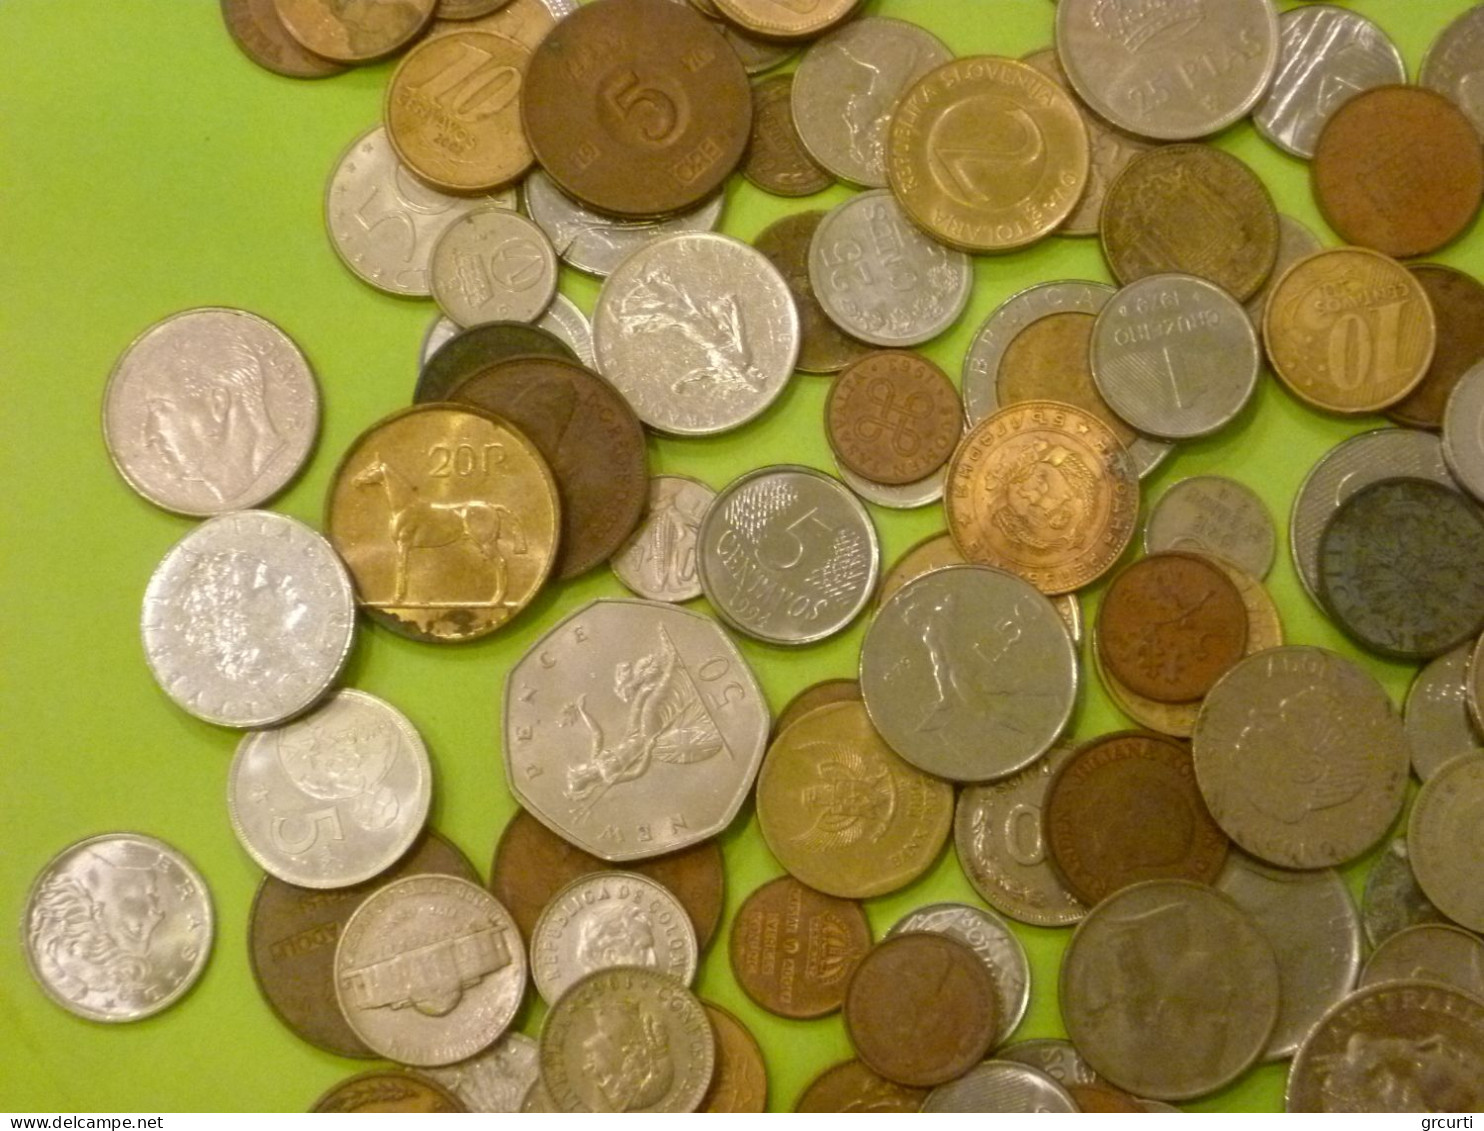 Mondo - Lotto di 1,5 kg di monete assortite